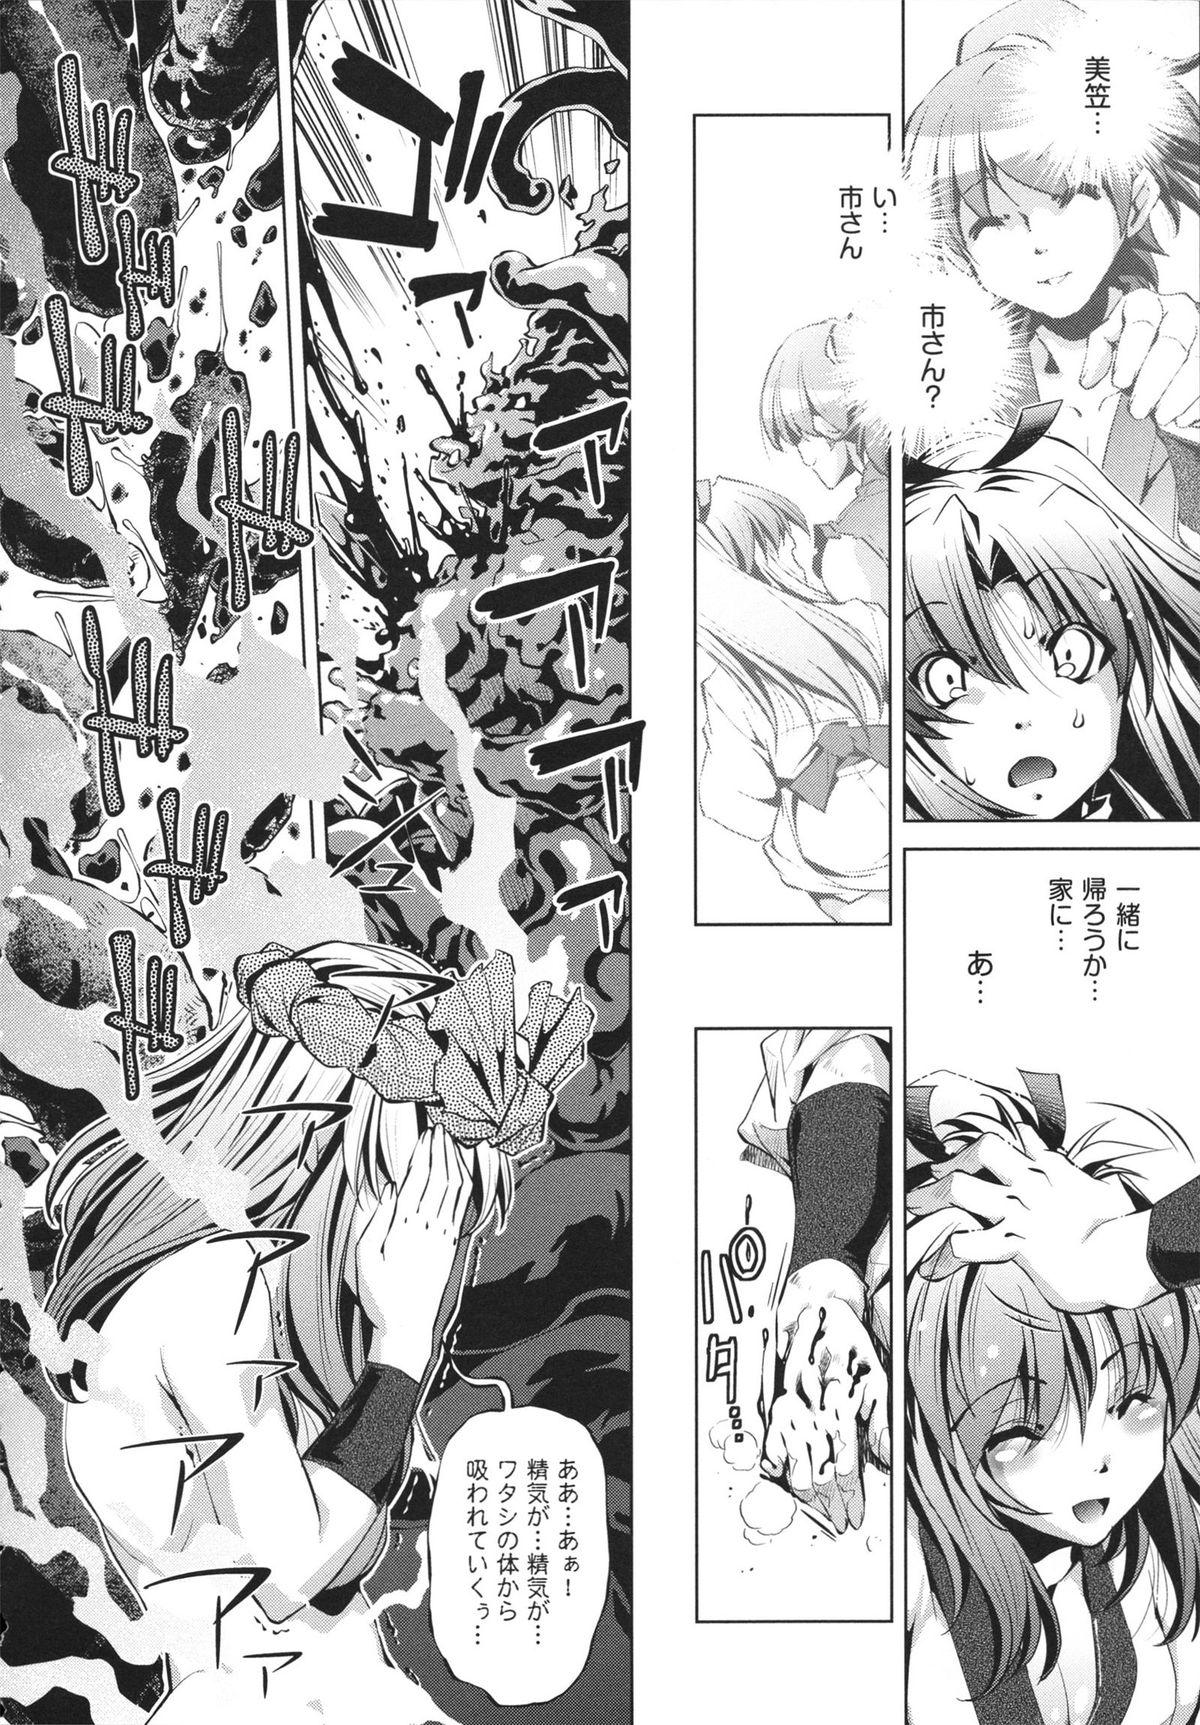 [Ootori Ryuuji] Shokushu wa Yawarakana Chibusa ni Makitsuki Onna-tachi no Ana wo Kakimidasu - Feeler coils around a soft breast and violates women's hole. 199